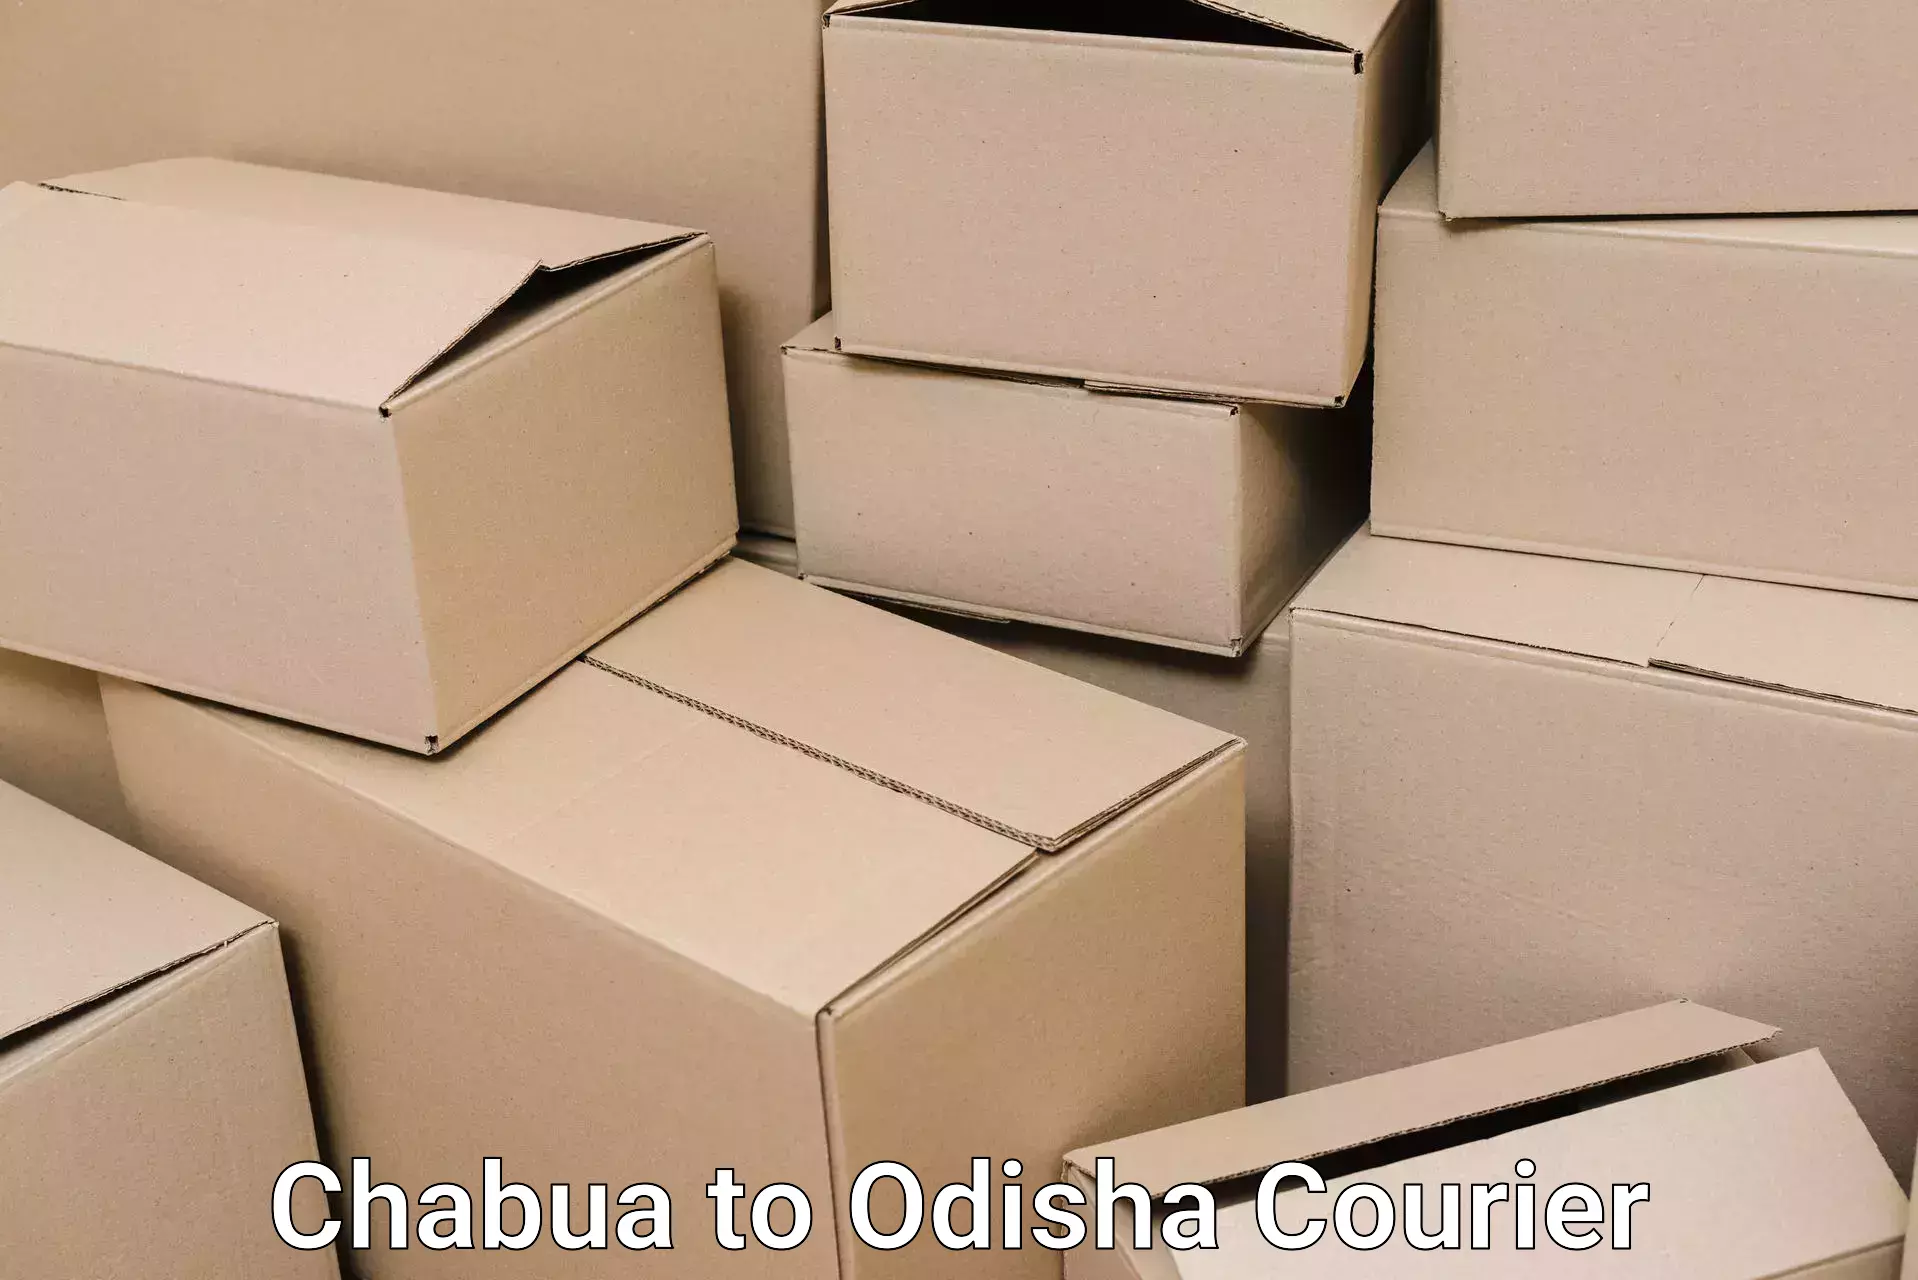 Full-service movers Chabua to Sohela